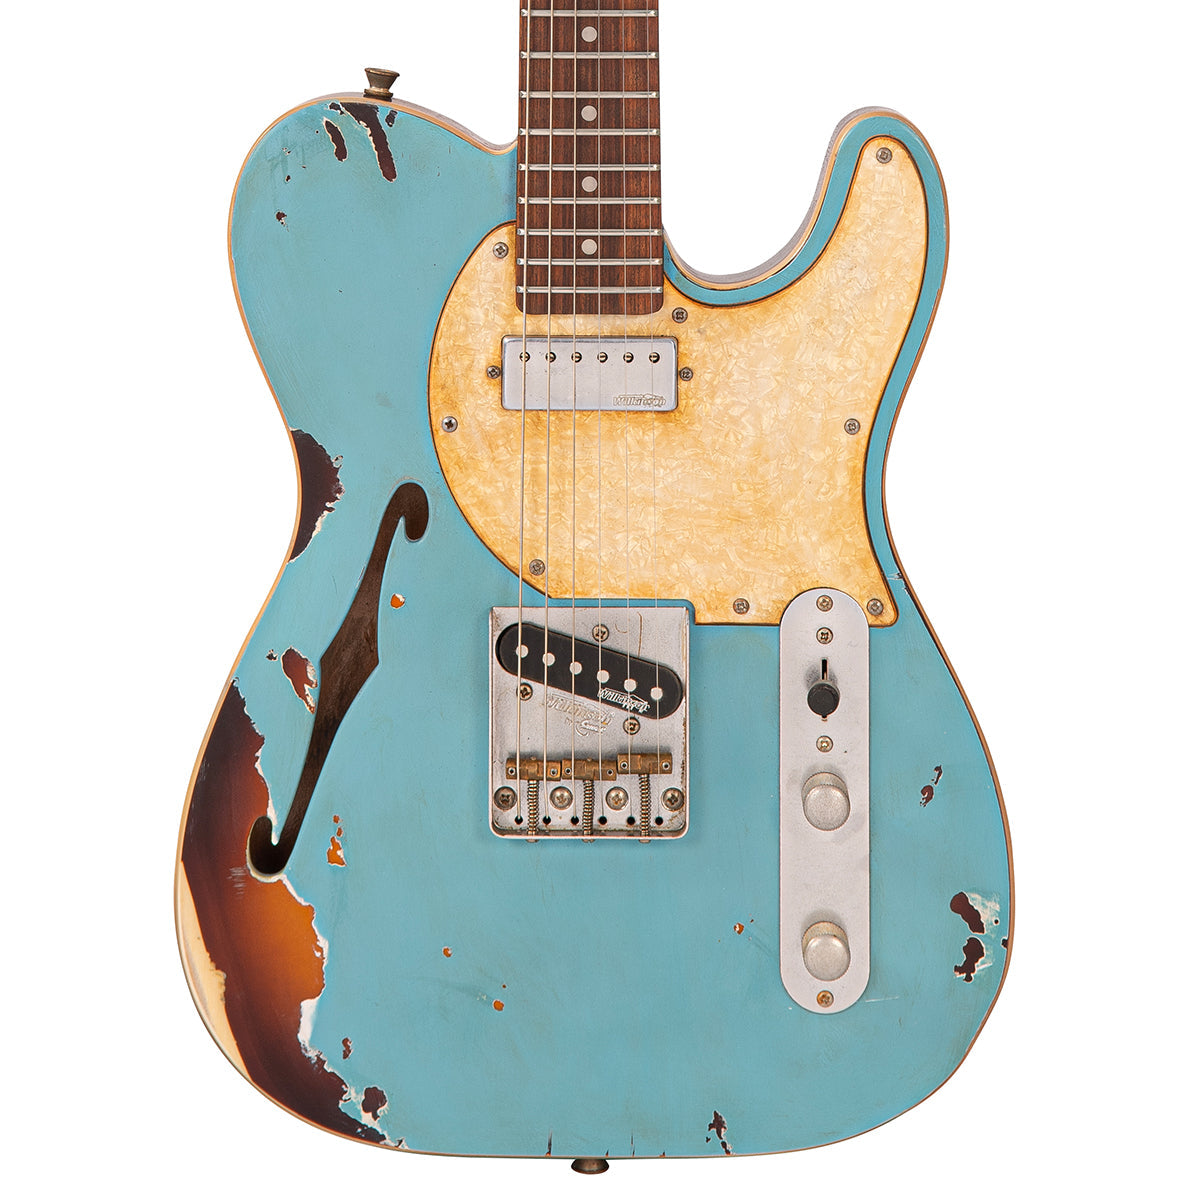 Vintage V72 ProShop Custom-Build ~ Blue Over Tobacco (Contact: Richards Guitars. www.rguitars.co.uk), Electrics for sale at Richards Guitars.